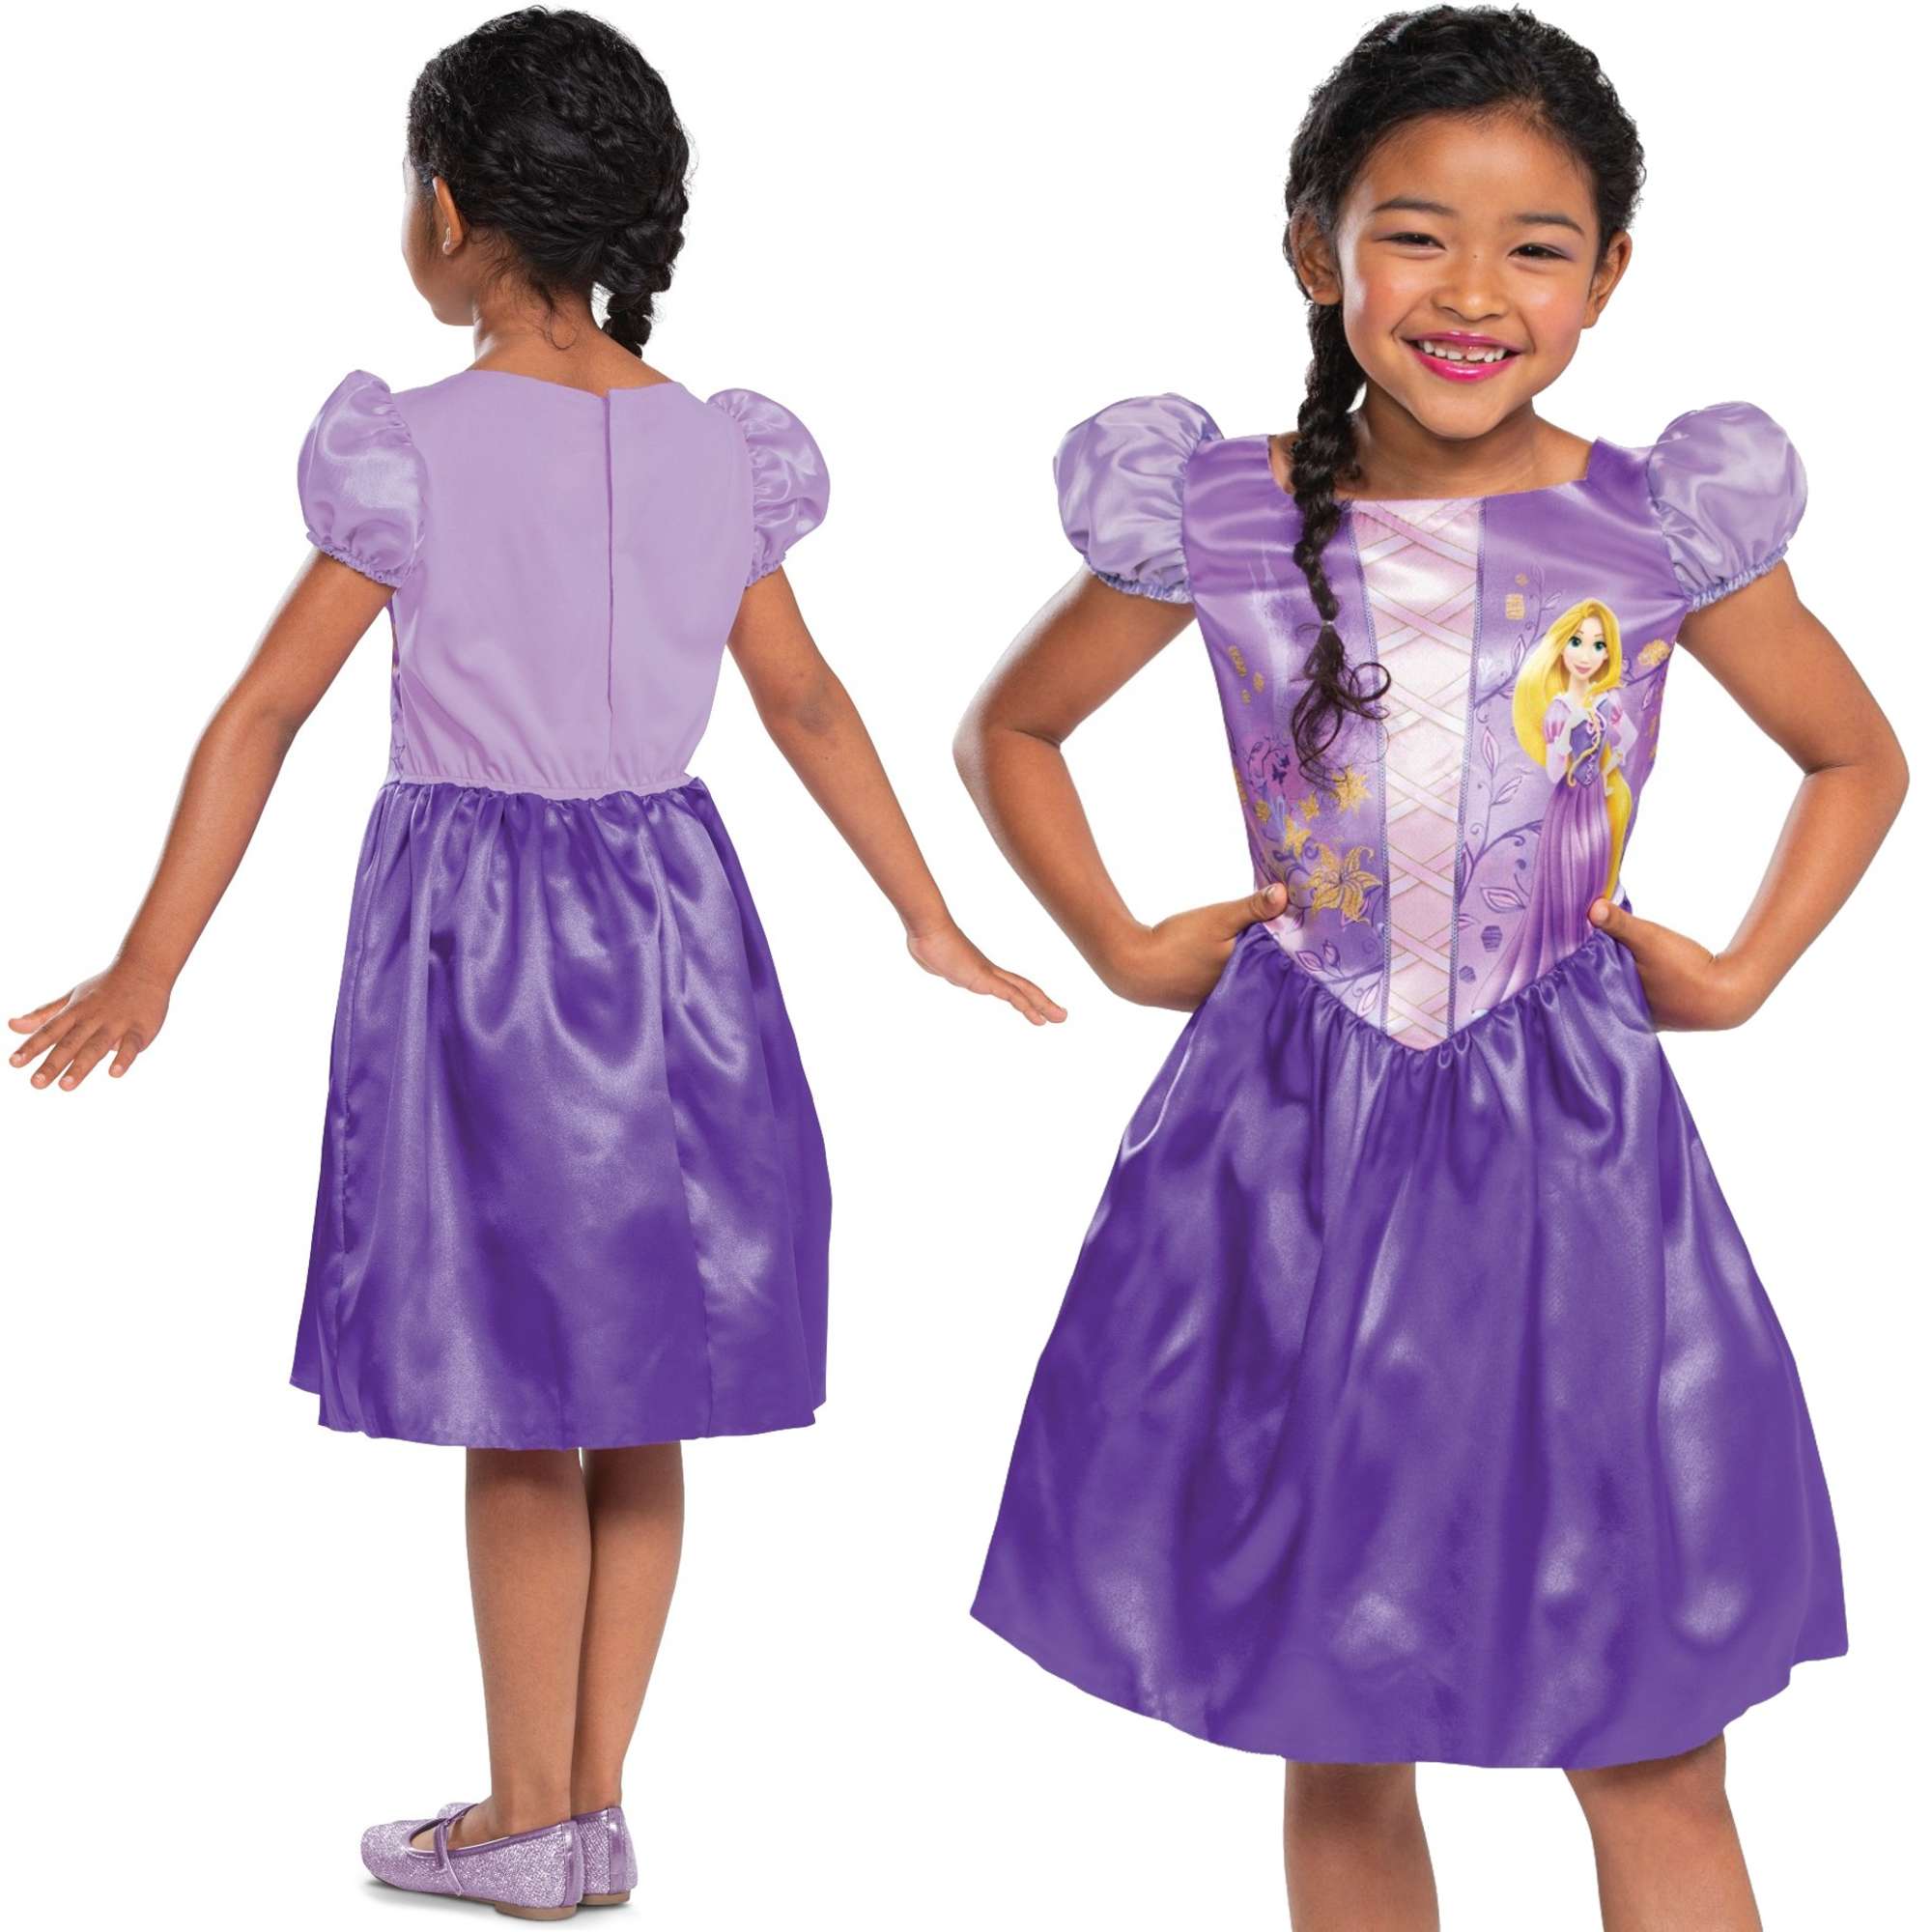 Strj karnawaowy Disney dla dziewczynki Roszpunka kostium przebranie 110-122 cm (4-6 lat)